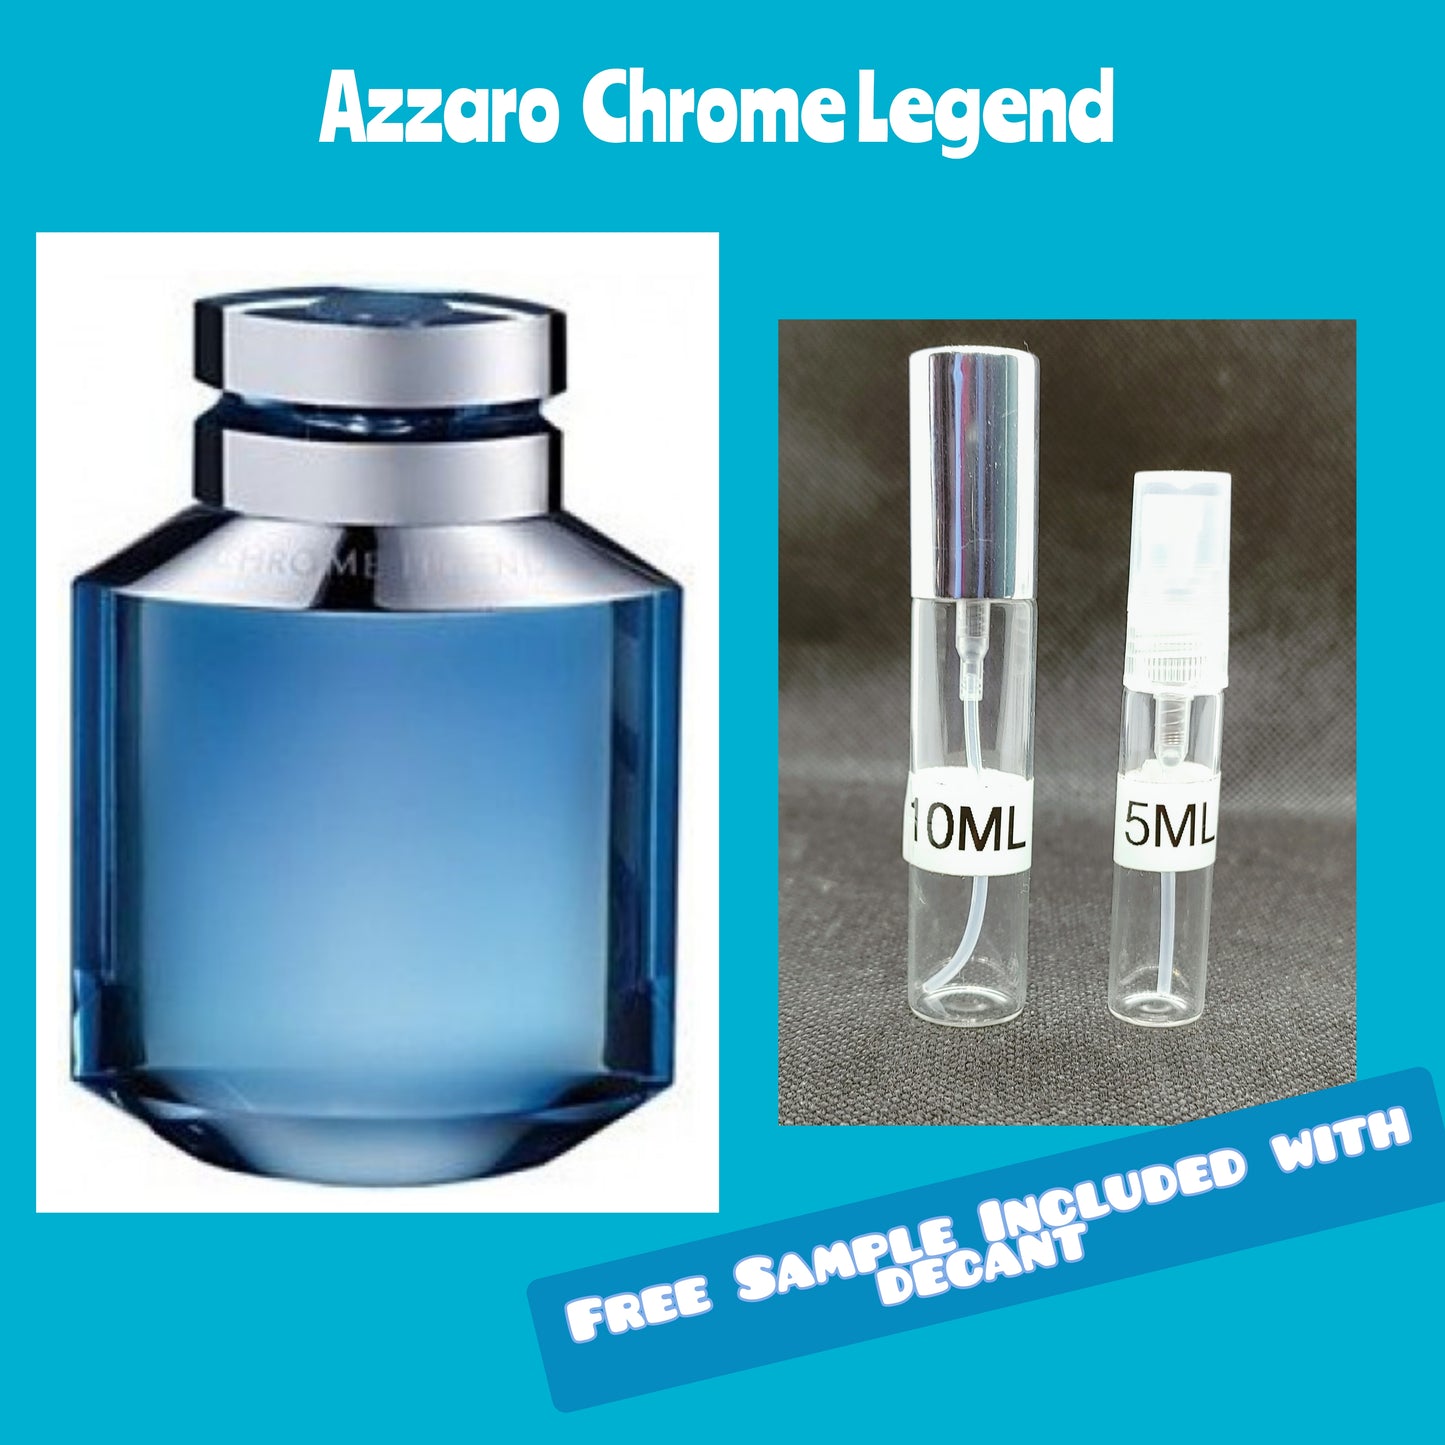 Azzaro Chrome Legend for men